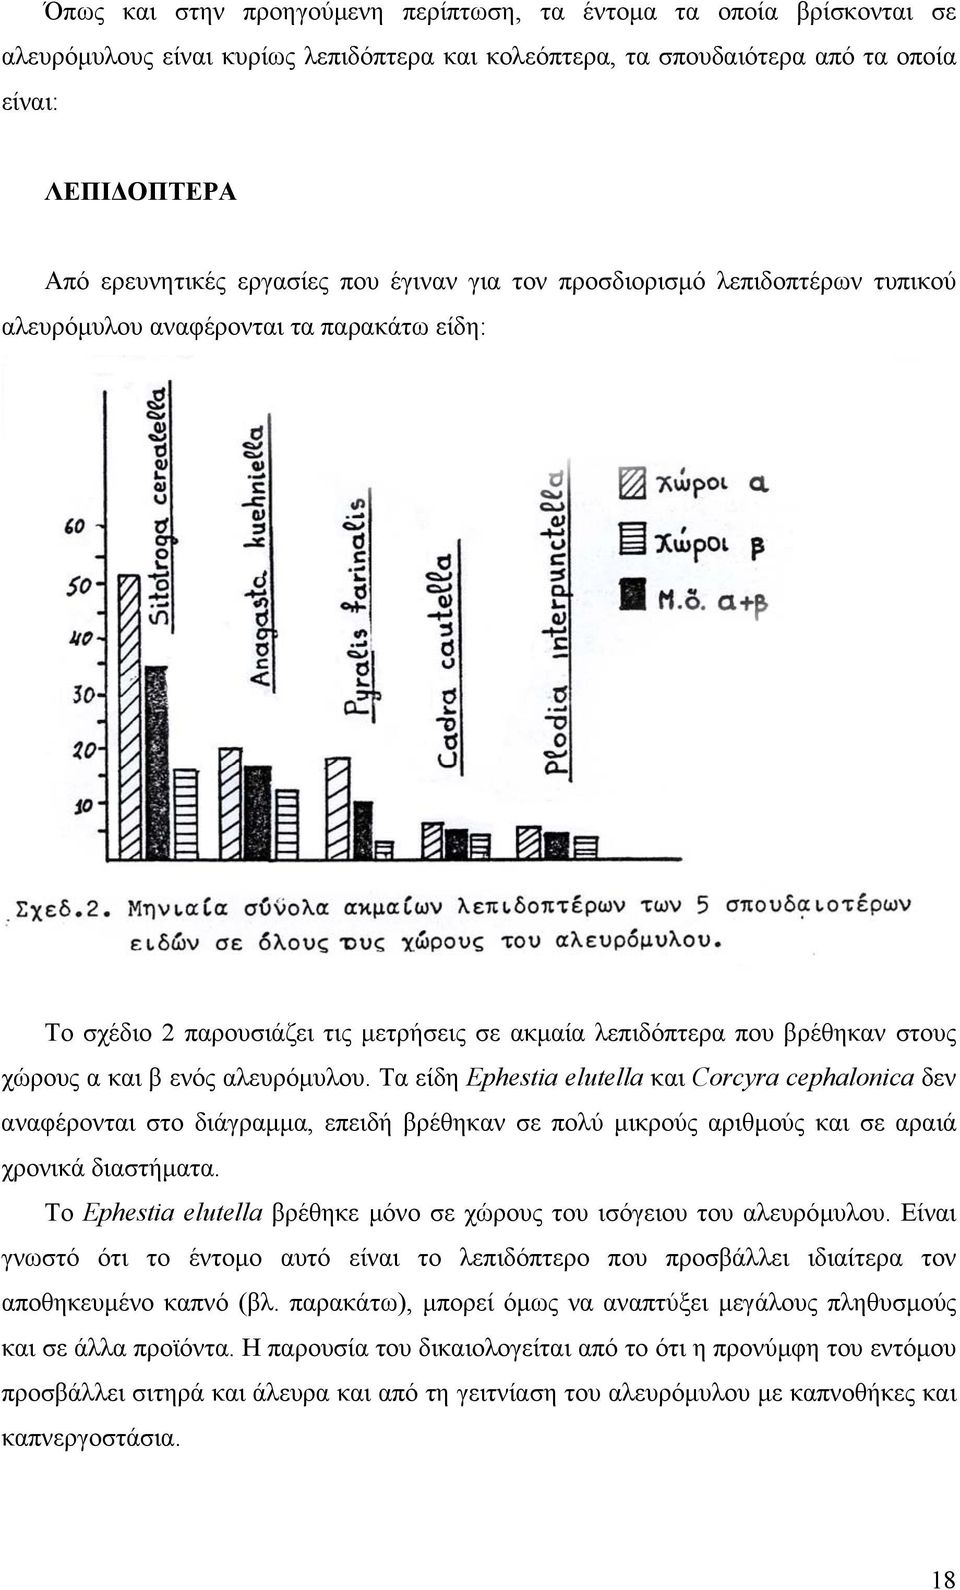 αλευρόµυλου. Τα είδη Ephestia elutella και Corcyra cephalonica δεν αναφέρoνται στο διάγραµµα, επειδή βρέθηκαν σε πολύ µικρούς αριθµούς και σε αραιά χρονικά διαστήµατα.